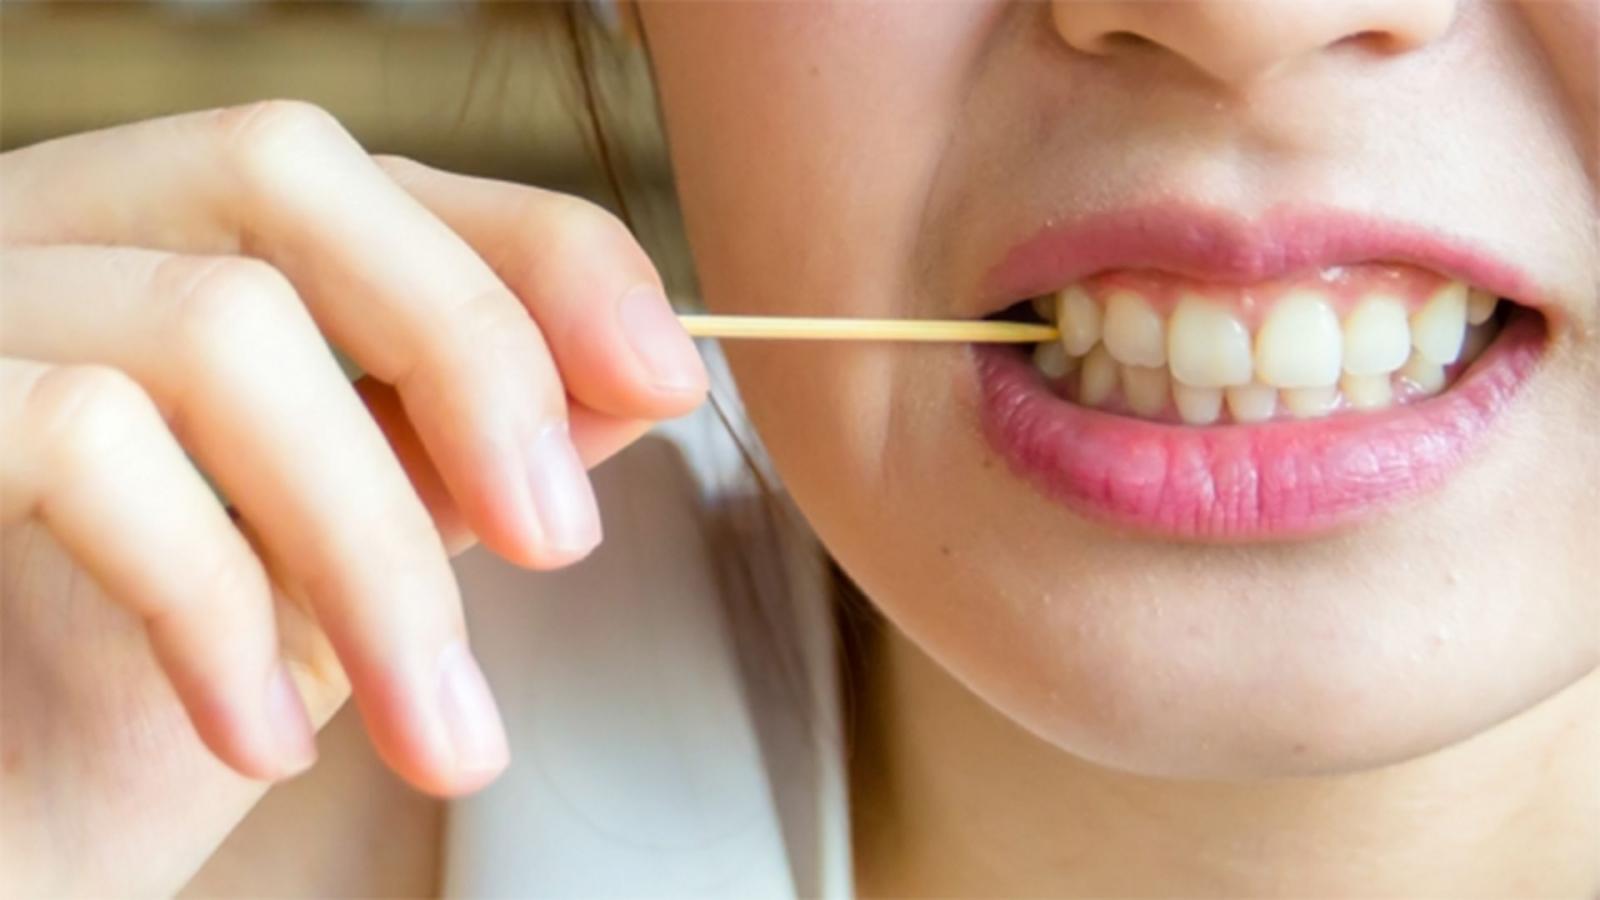 Sau khi mài răng bọc sứ nên kiêng gì?